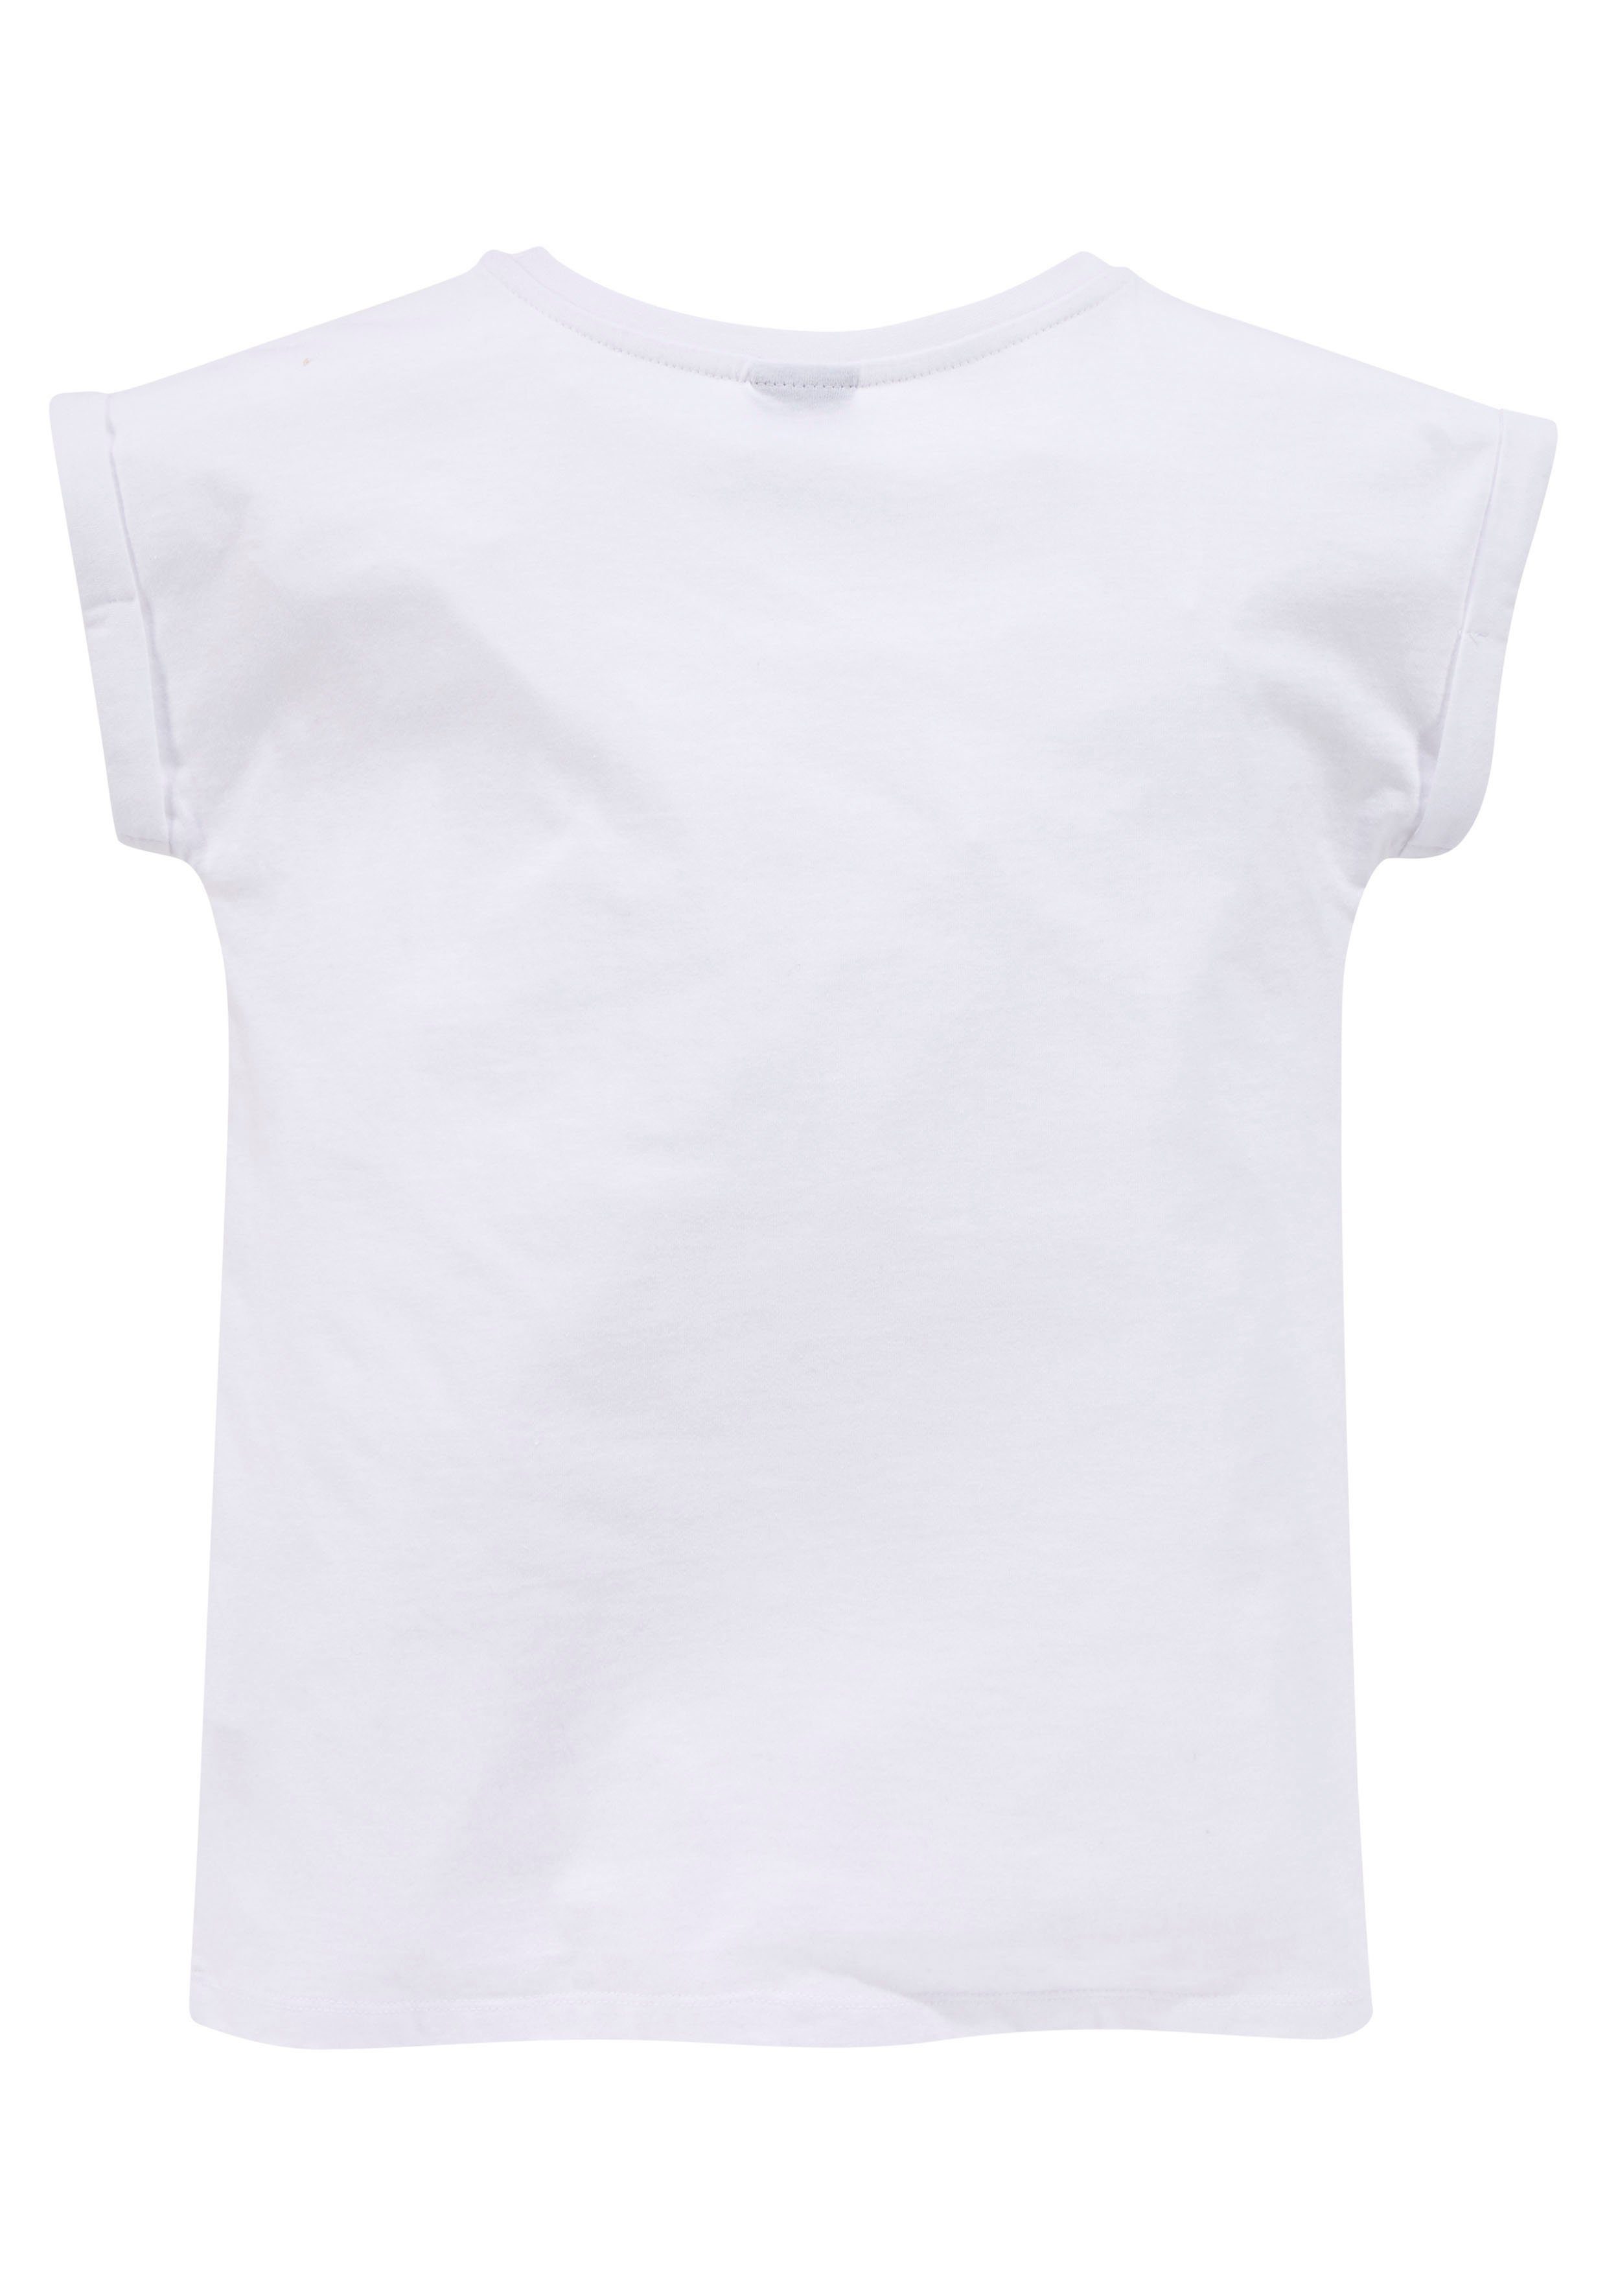 ERNST Ärmelaufschlag T-Shirt kleinem mit NOT Form YOUR legere KIDSWORLD